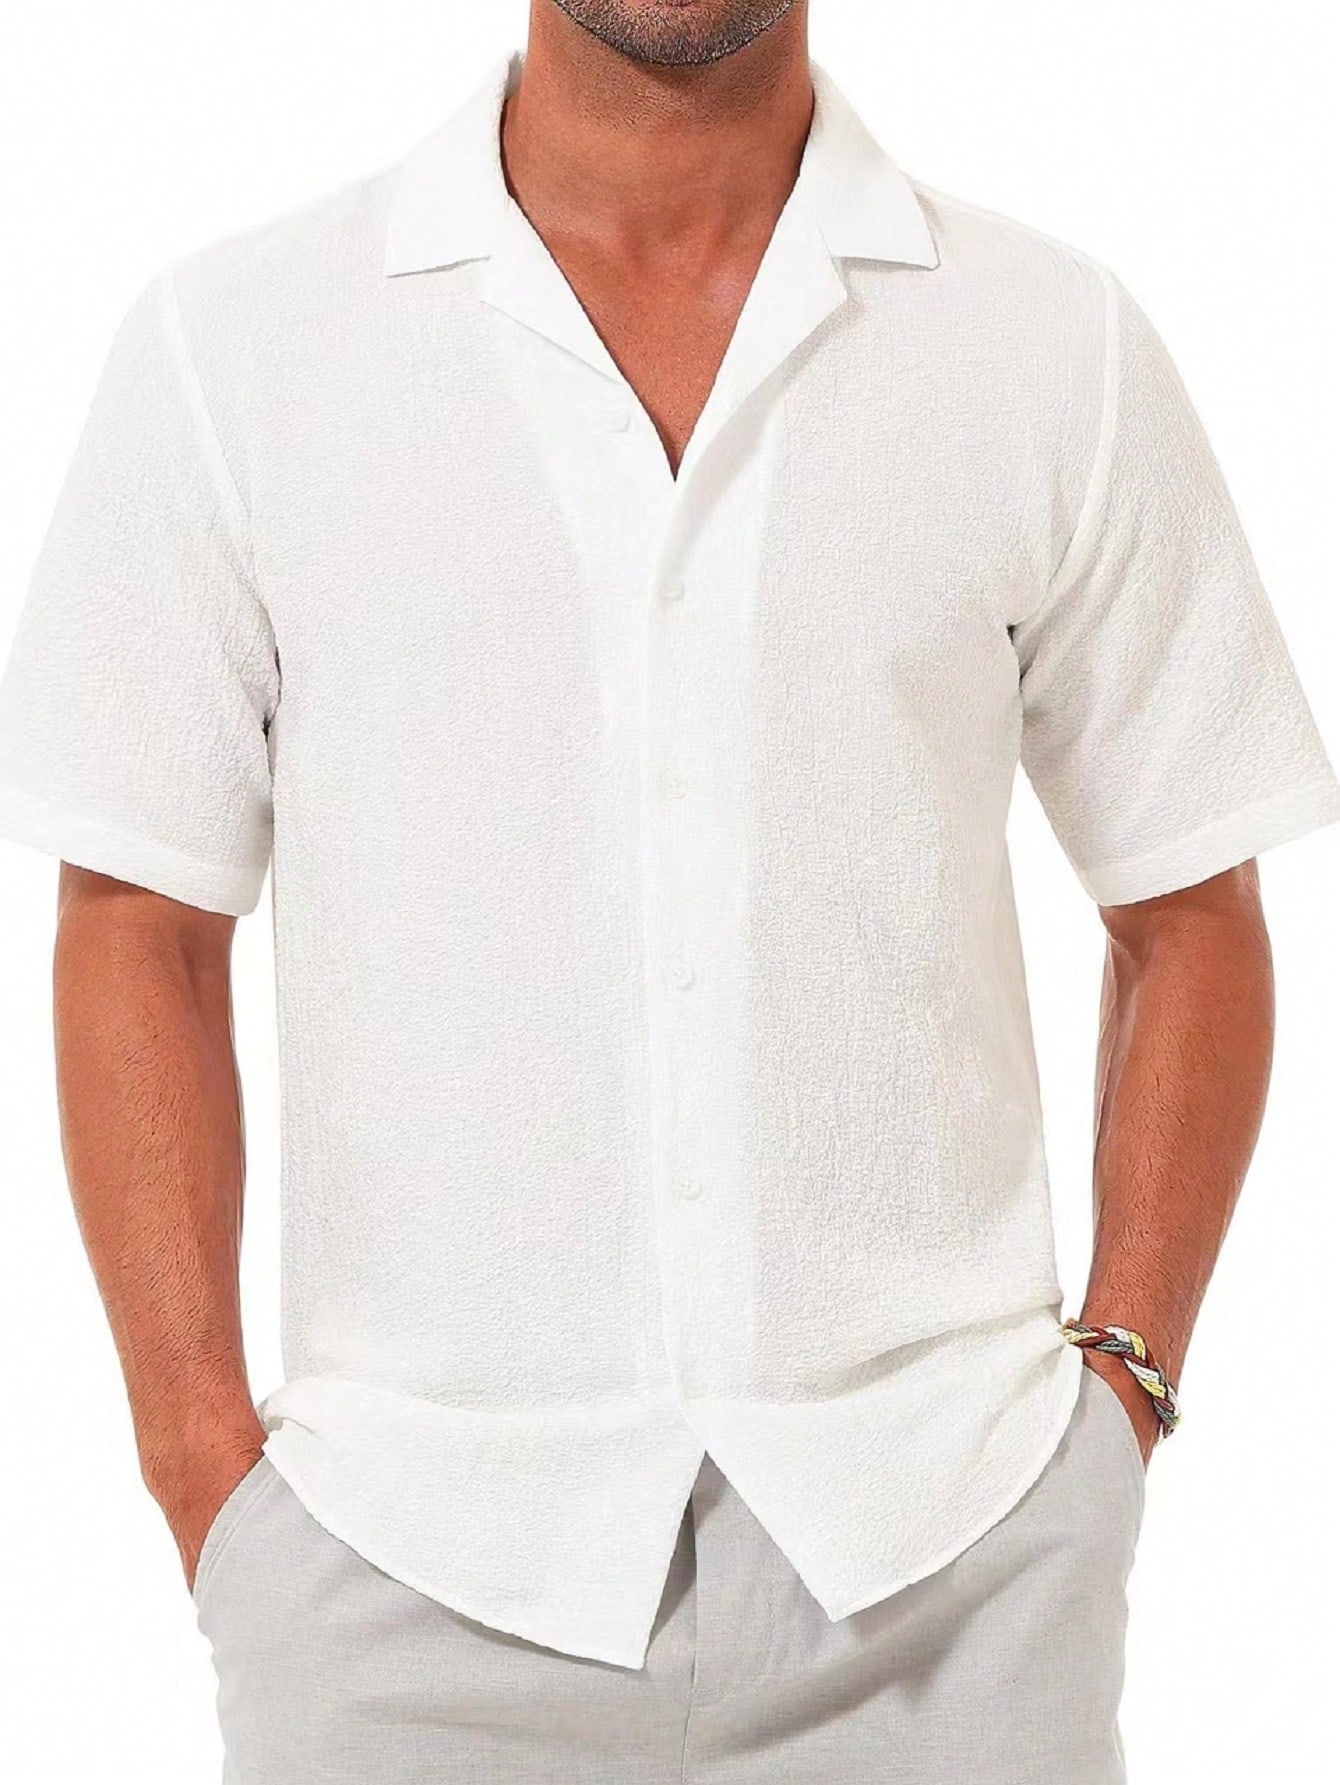 Мужская повседневная рубашка с коротким рукавом на пуговицах, белый мужская повседневная рубашка с коротким рукавом на пуговицах бежевый